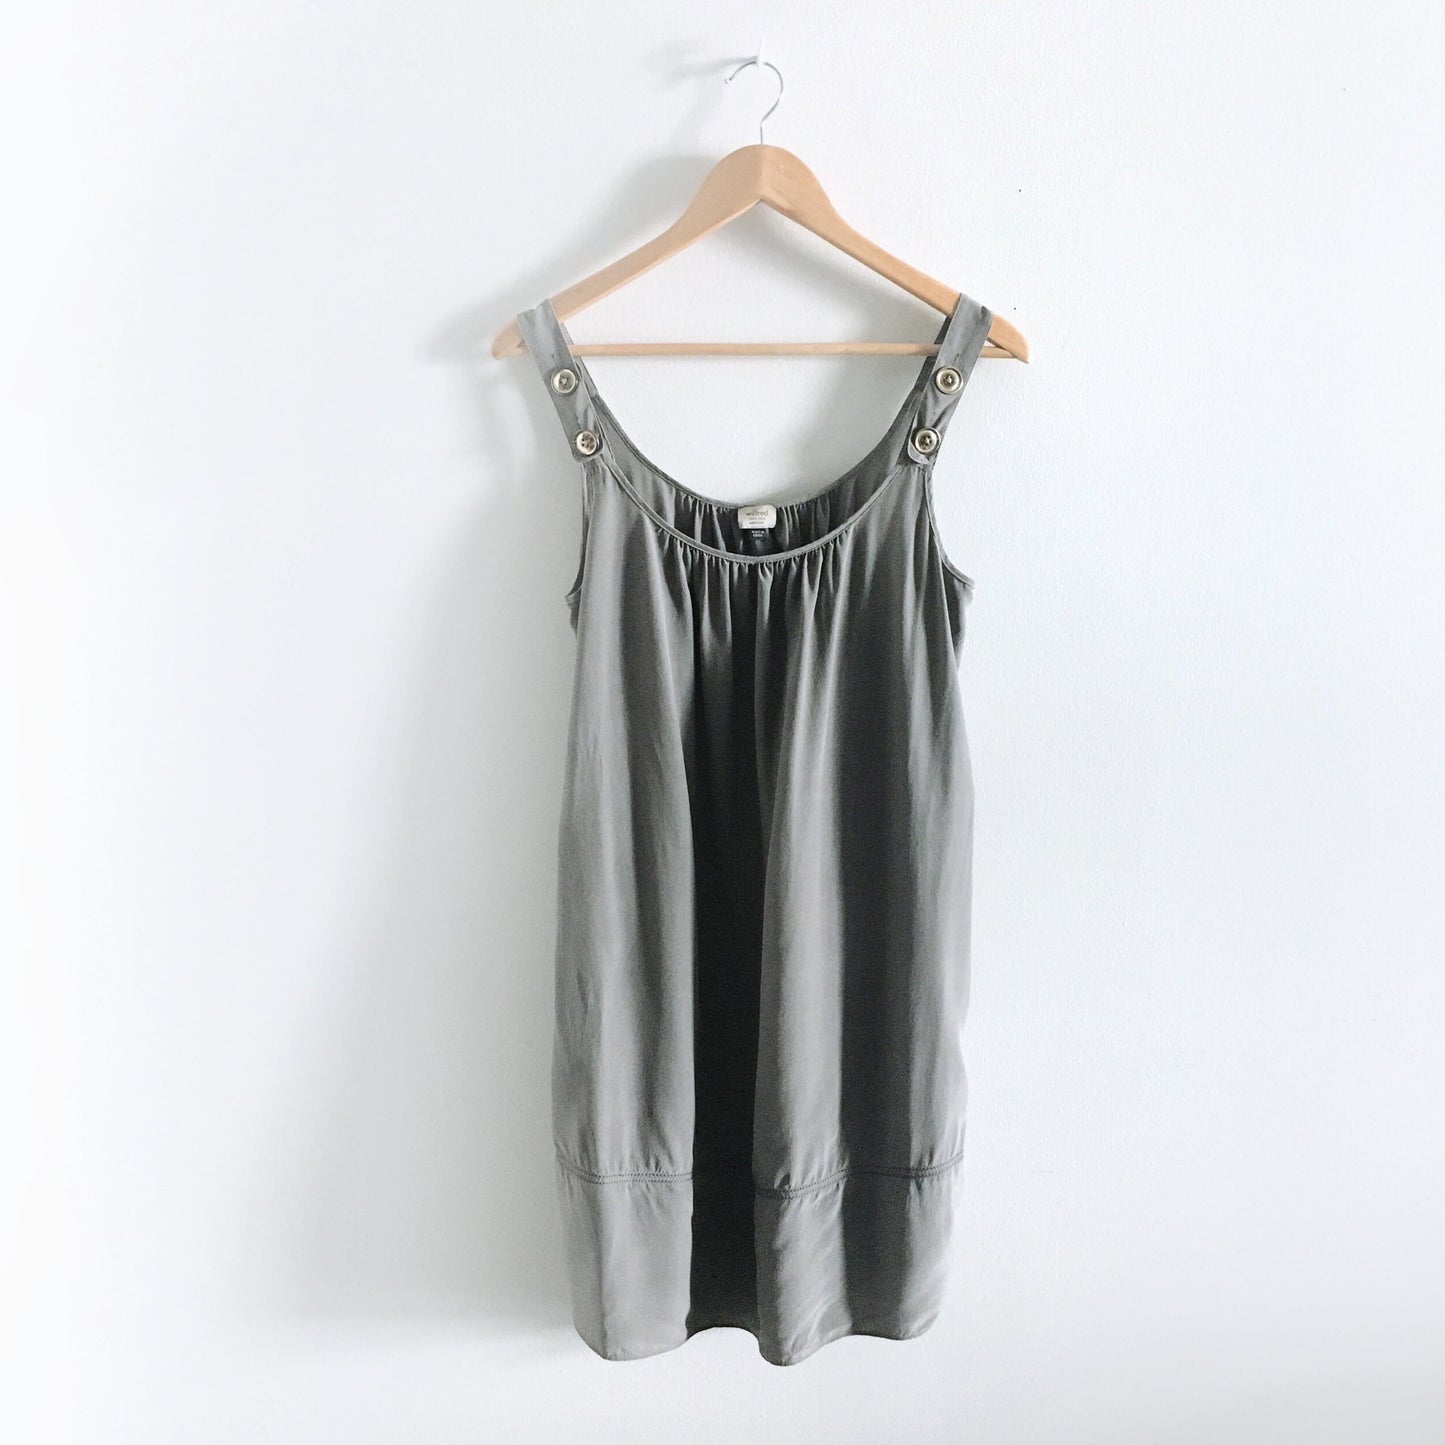 Wilfred grey silk dress - size Medium